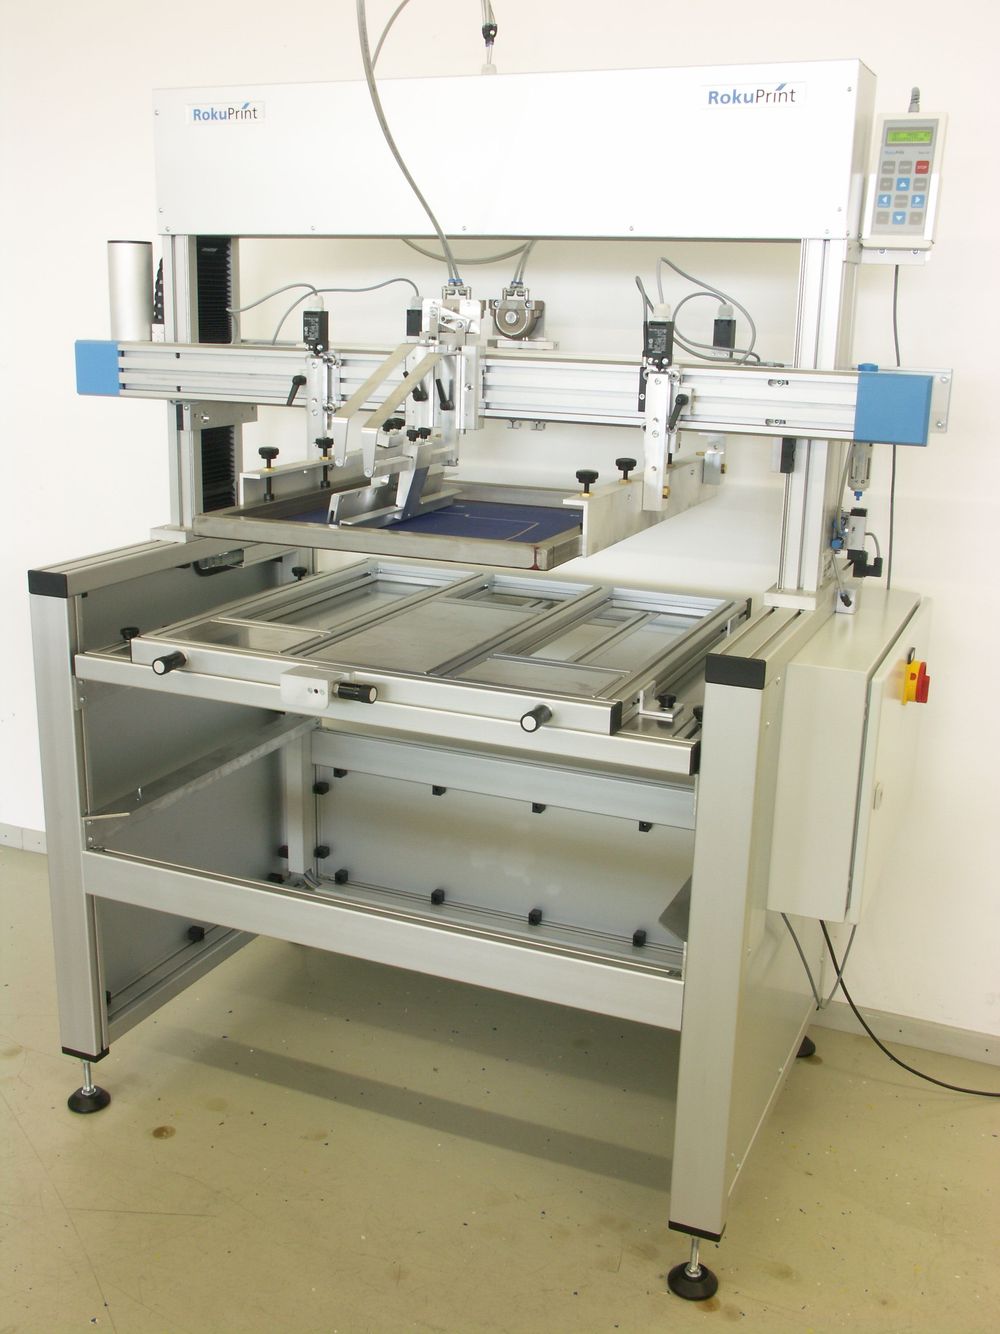 RPX 700_01 Siebdruckmaschinen